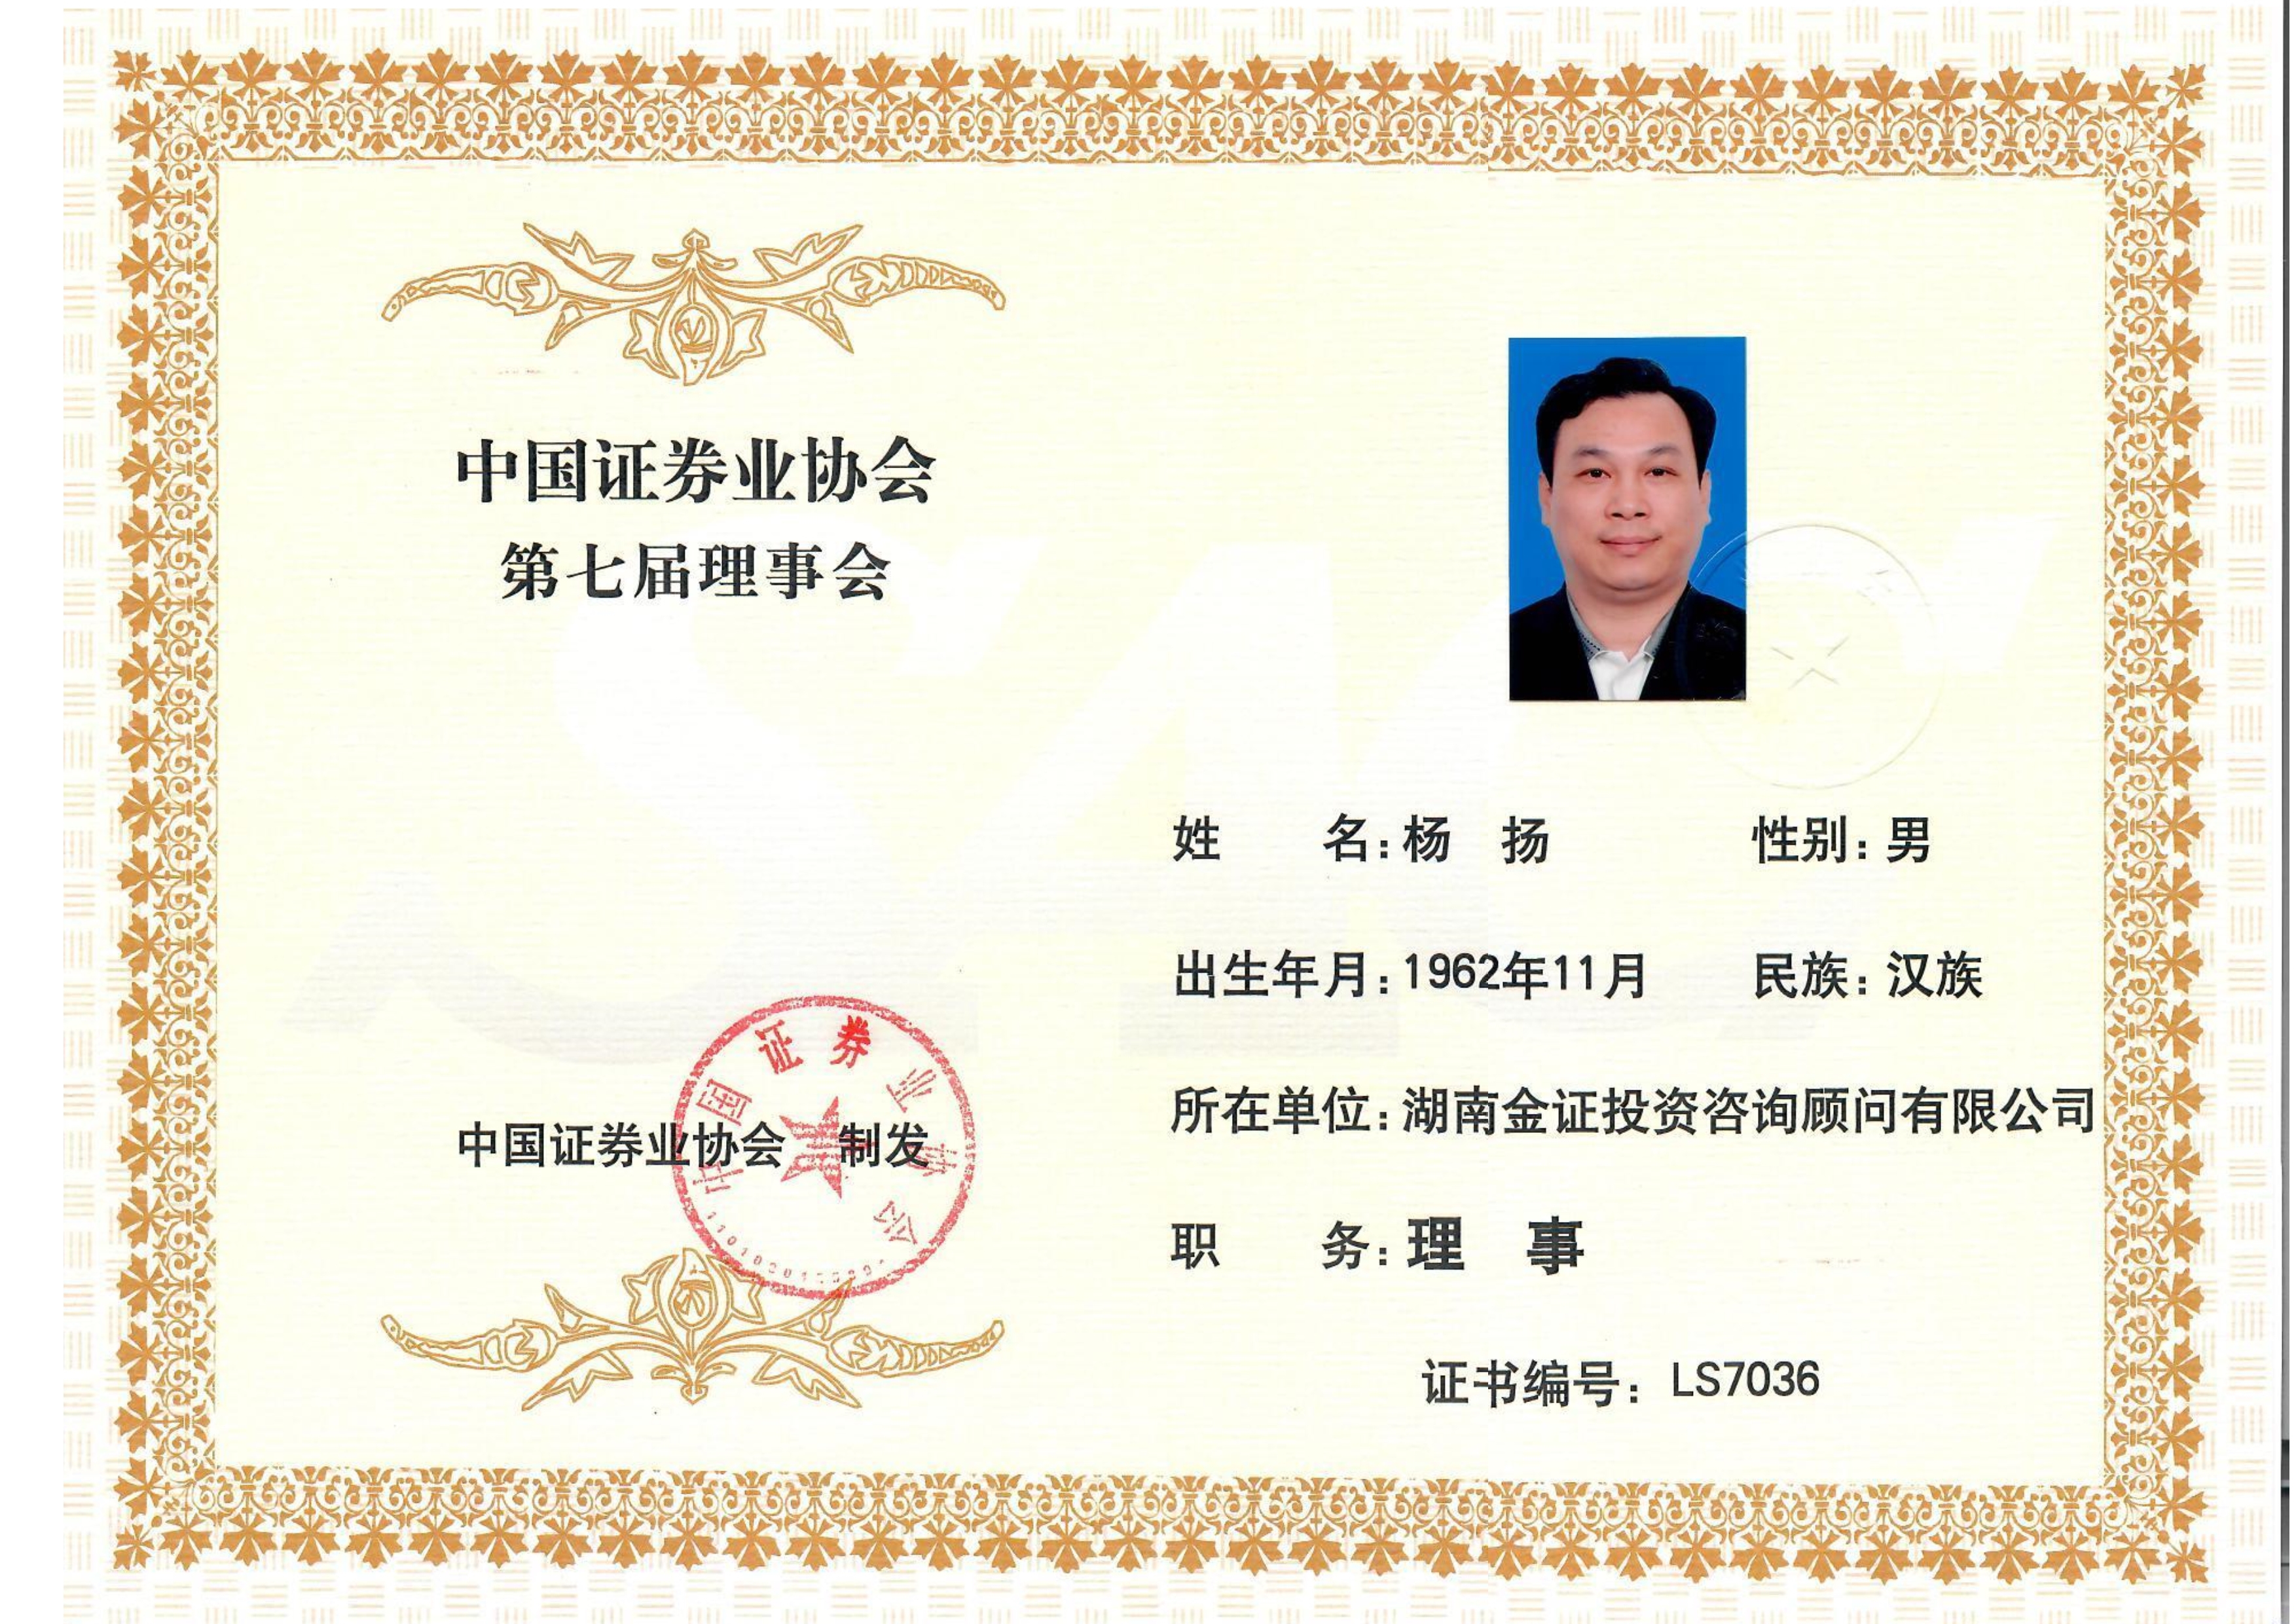 中國證券業協會第七屆理事會理事